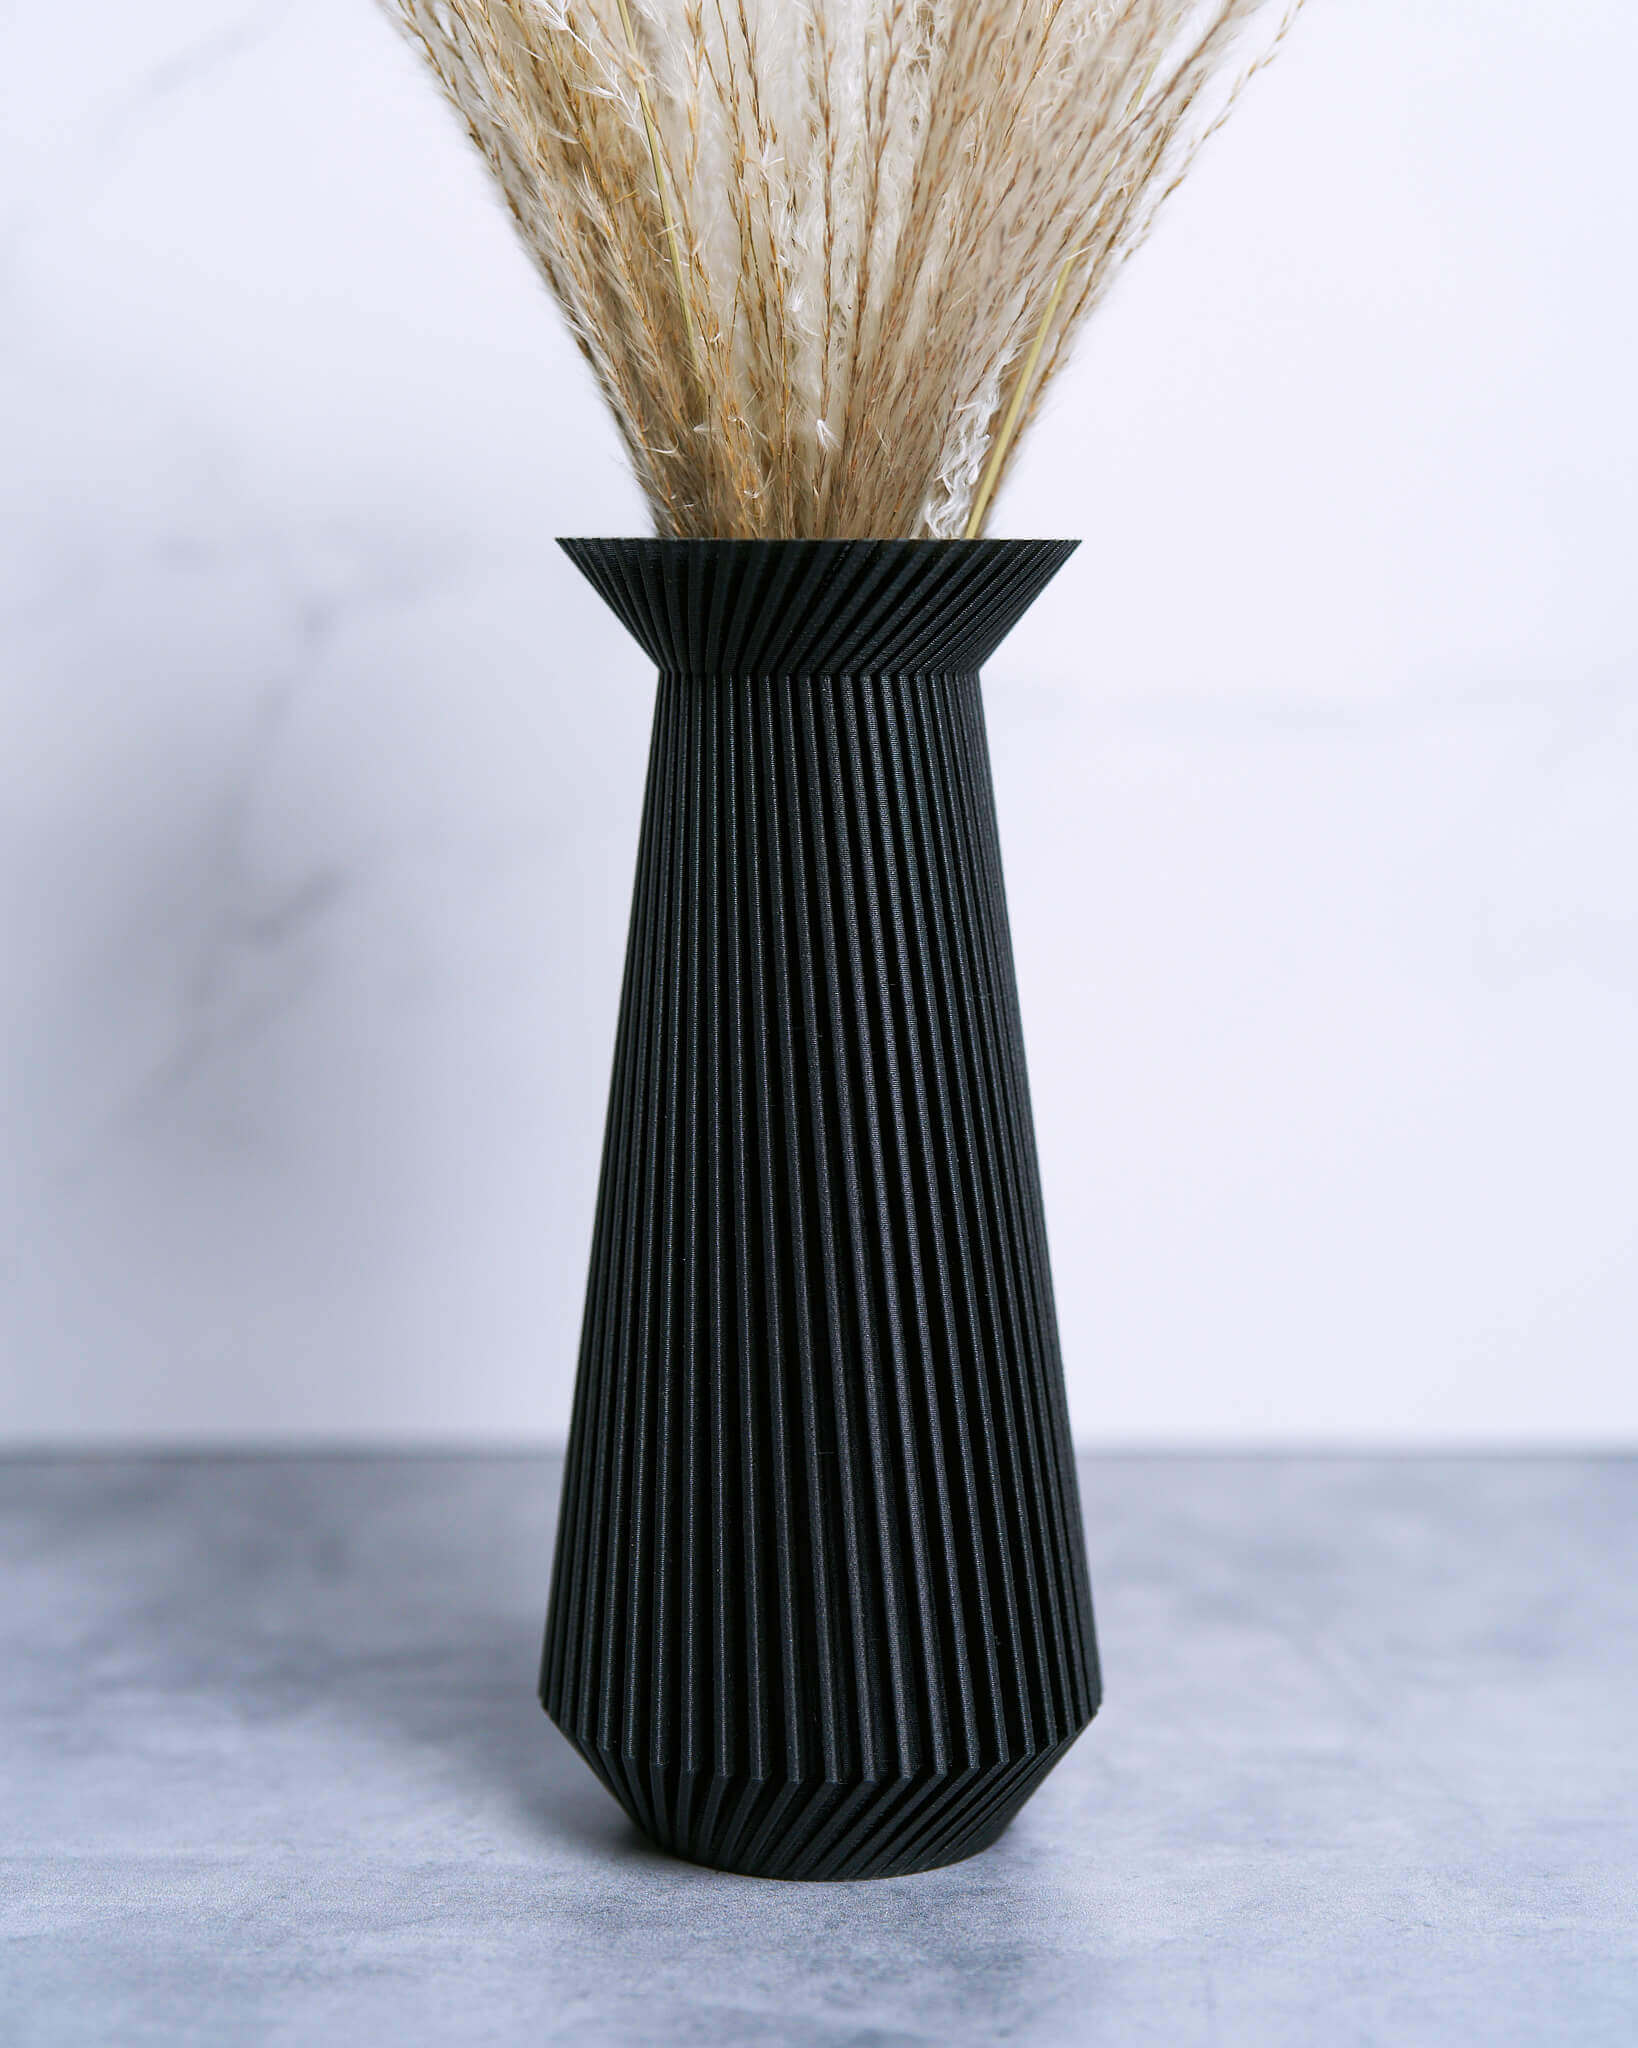 Black Vase | Black Floral Vase | Black Matte Textured Vase | BANDA by Woodland Pulse. Modernist vase collection.